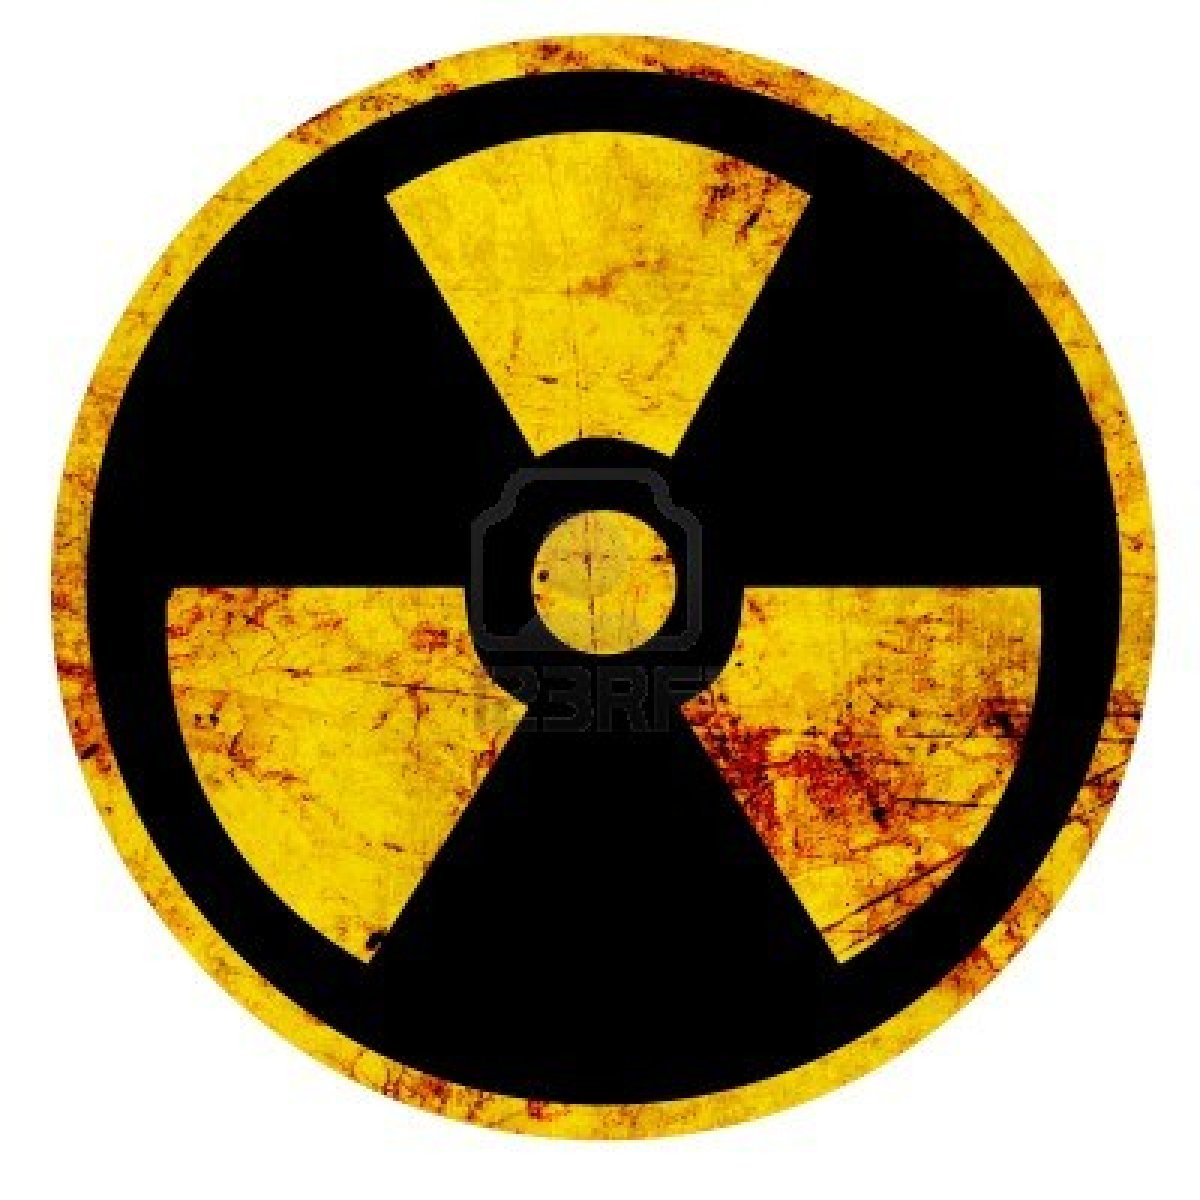 15612731-signe-nucleaire-qui-represente-le-danger-des-rayonnements